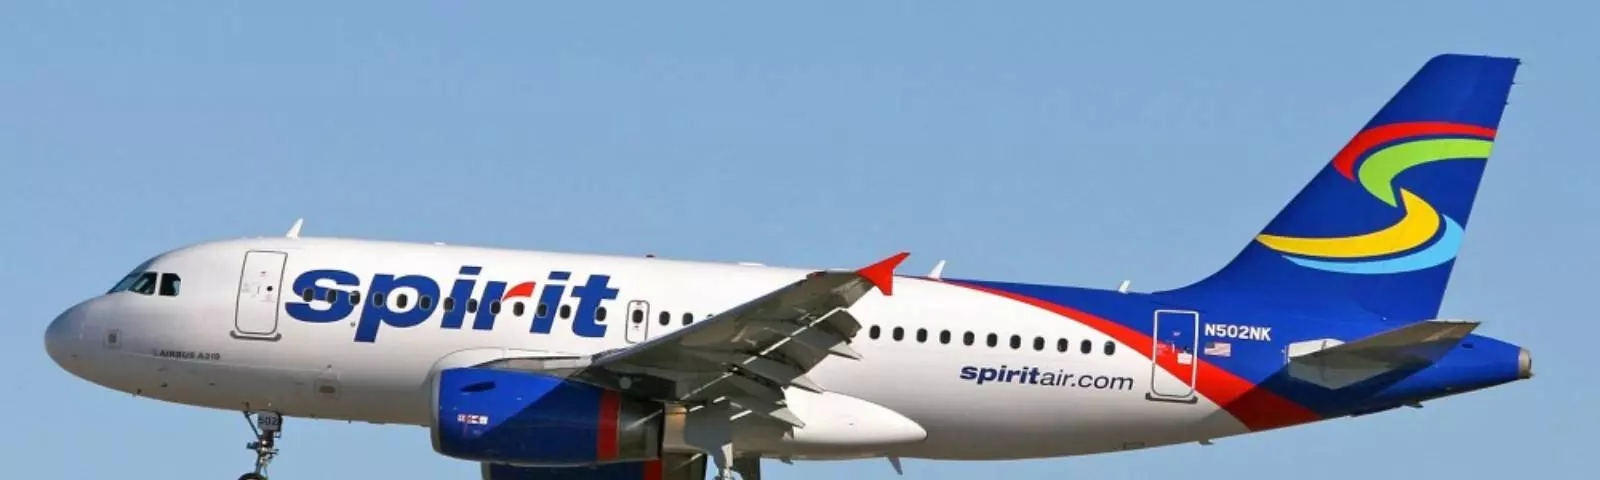 Spirit airlines (спирит эйрлайнс): описание авиакомпании, преимущества и недостатки, официальный сайт, происшествия, отзывы пассажиров